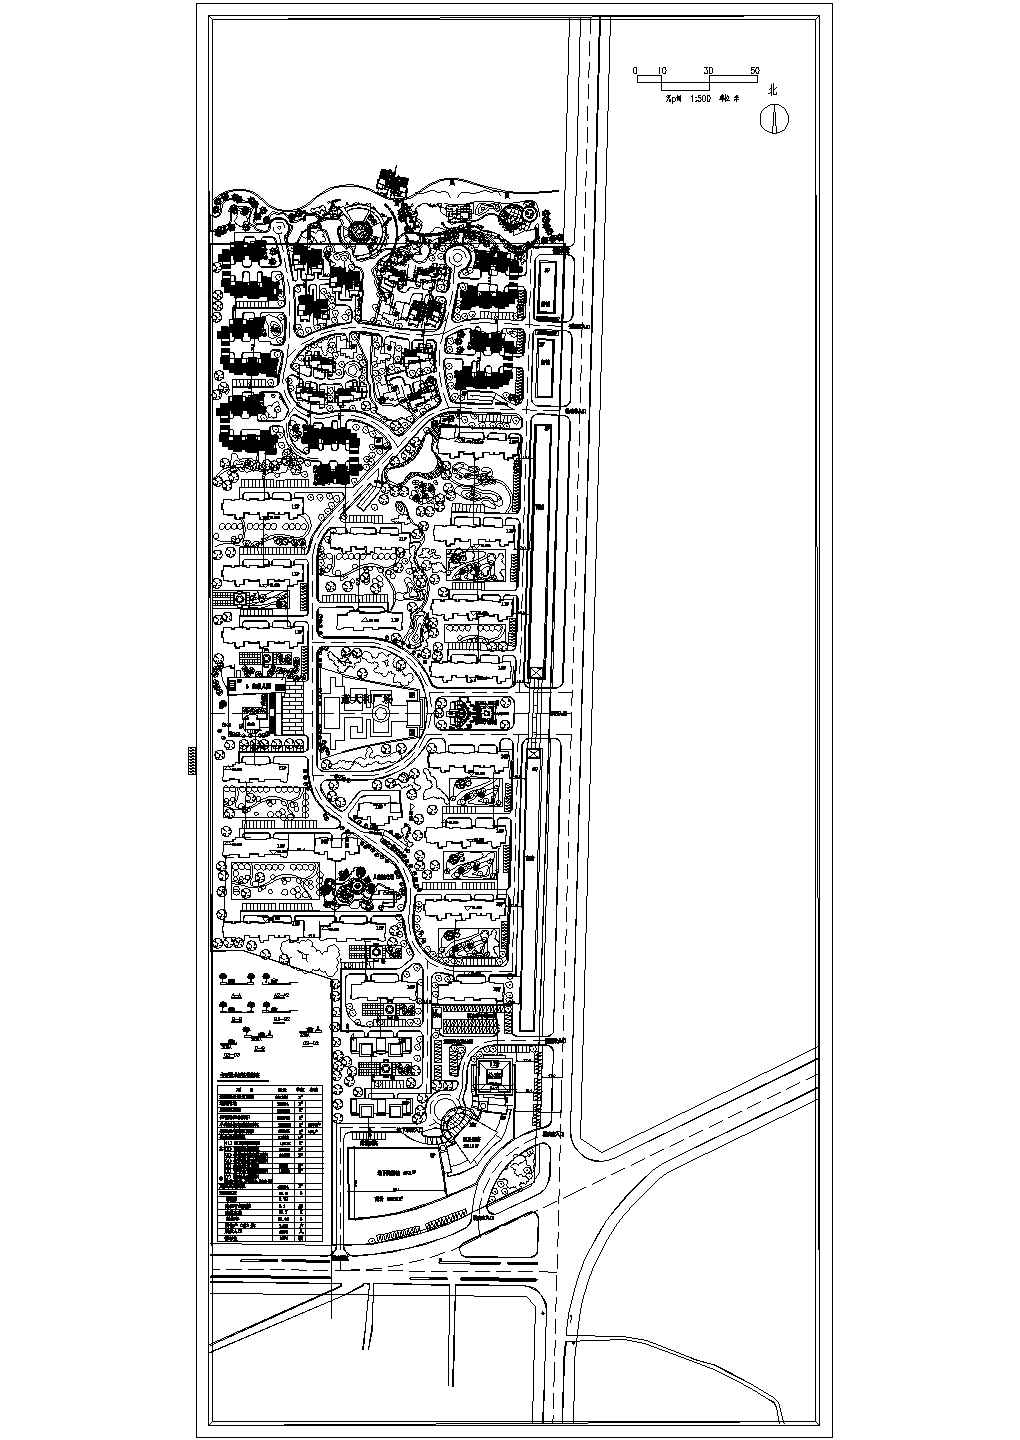 赞皇汽车站附近某住宅小区规划总平面图